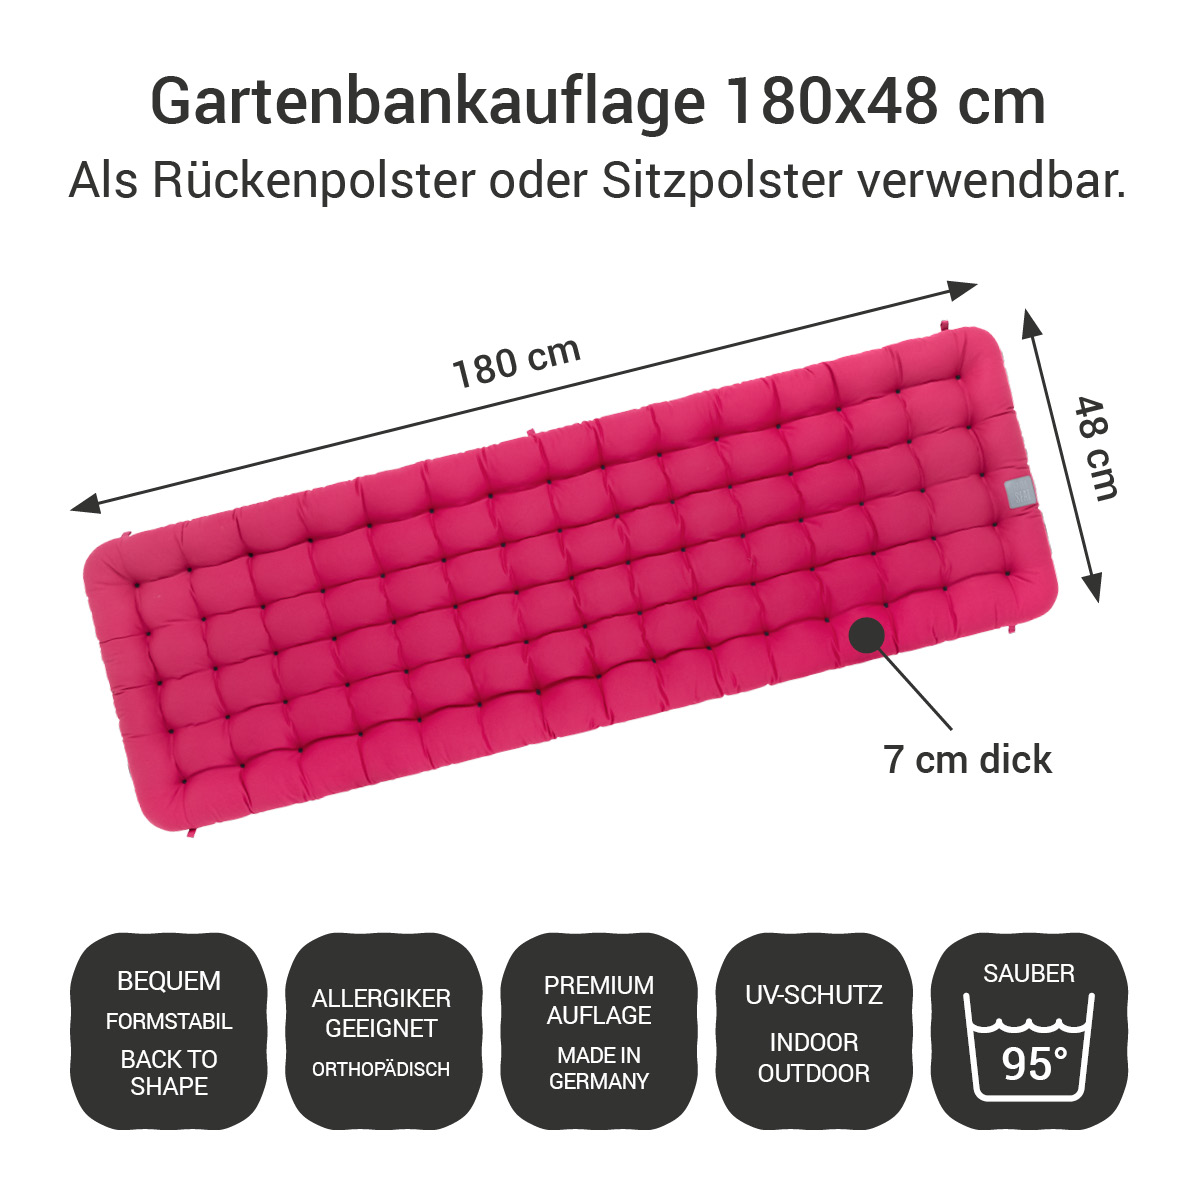 Gartenbank Auflagen (2tlg.) pink 180x48 cm / 180 x 50 cm | bequem & orthopädisch, komplett im Ganzen waschbar bis 95°C, wetterfest, Made in Germany